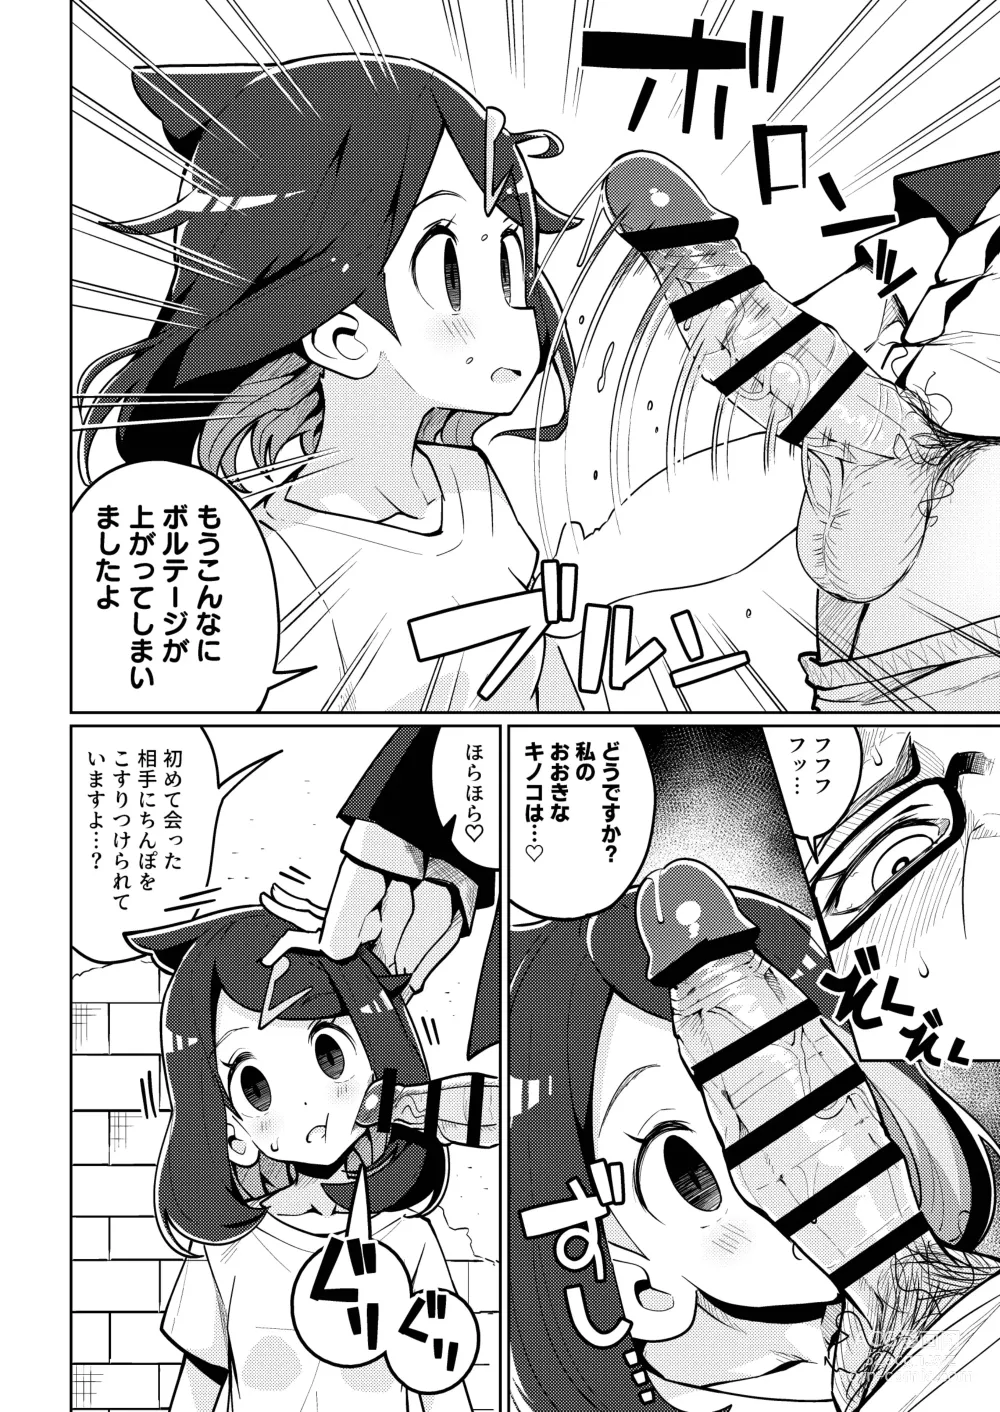 Page 6 of doujinshi Psycho Power tte Nan desu ka?